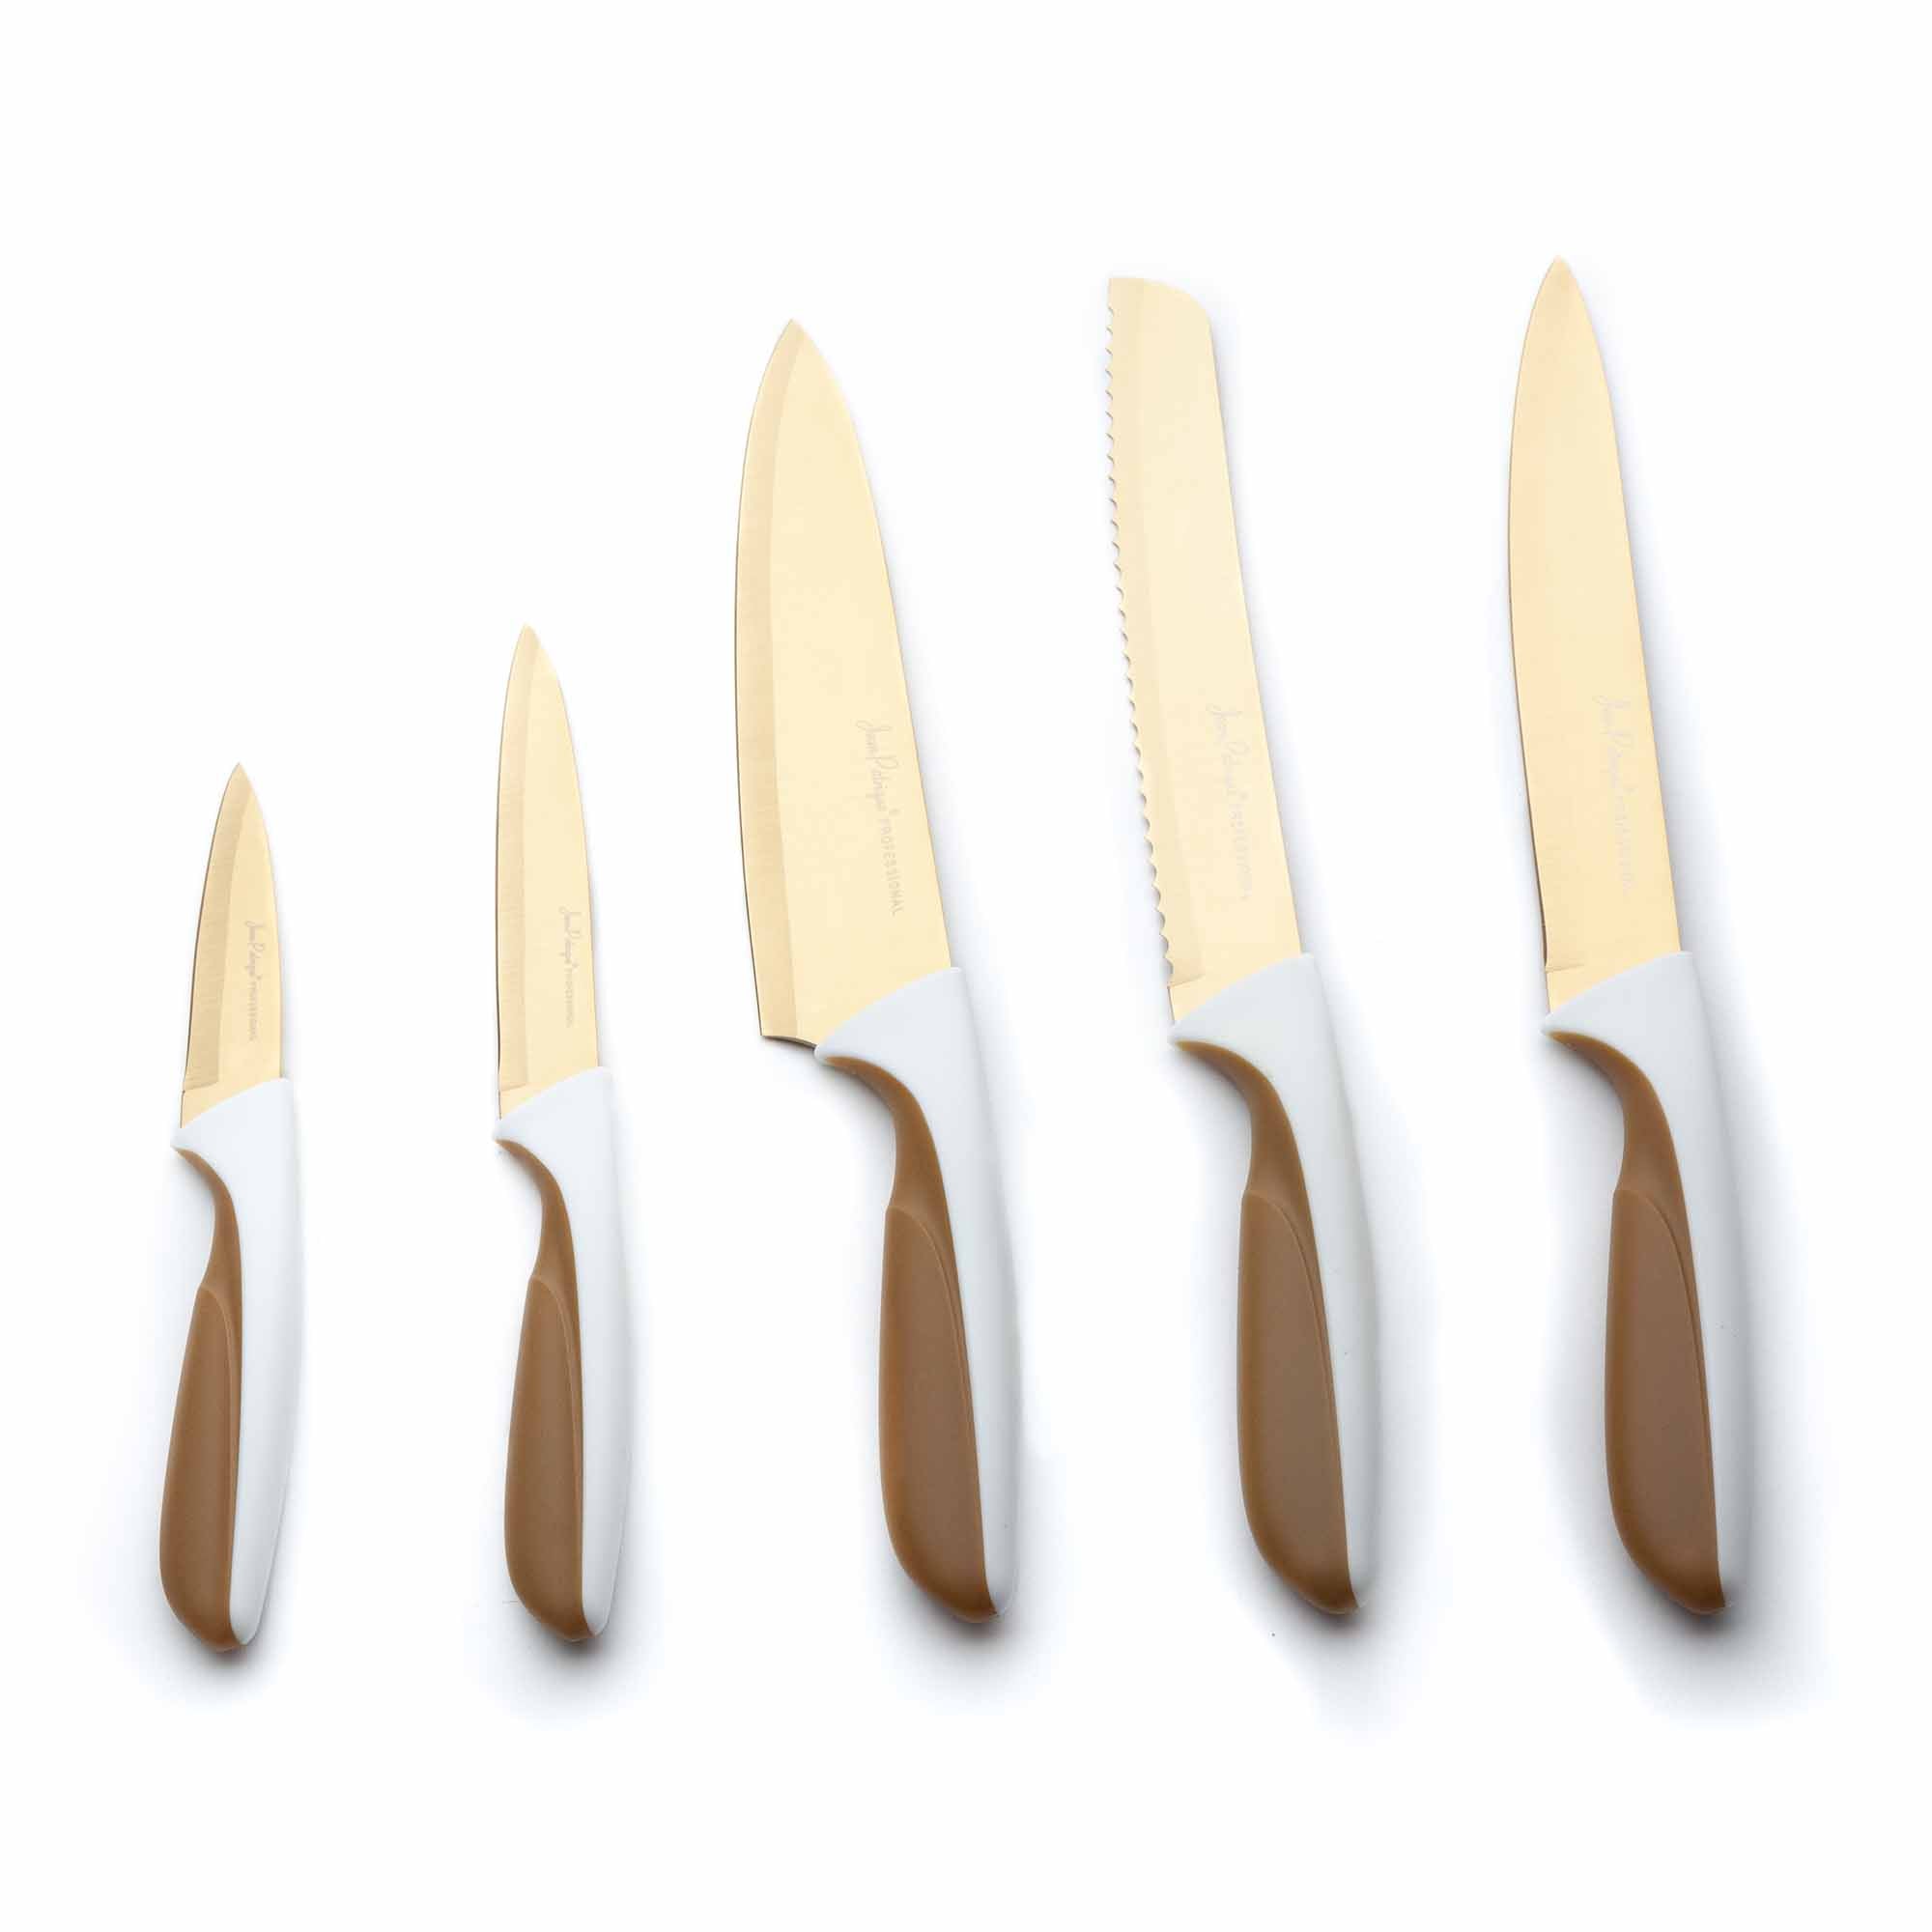 5-Piece Titanium Knife Set - White/Gold Handles – Jean Patrique